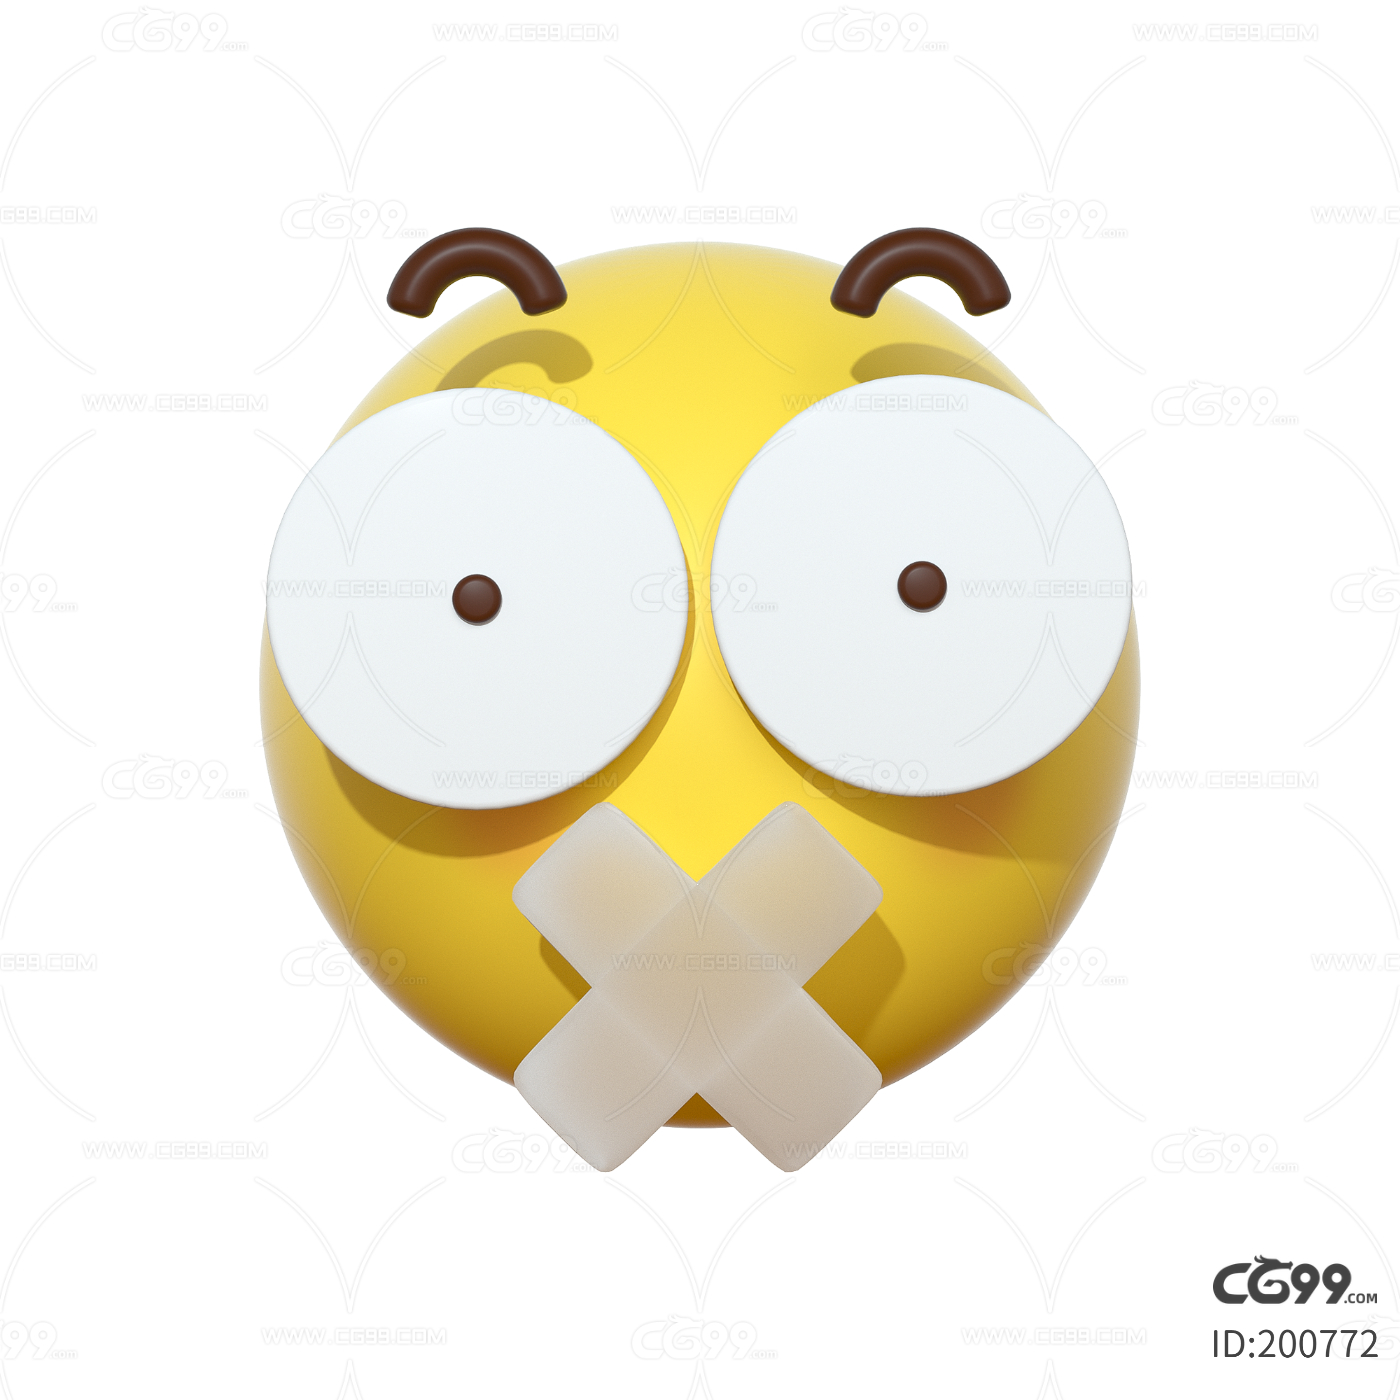 🤐 闭嘴 Emoji图片下载: 高清大图、动画图像和矢量图形 | EmojiAll